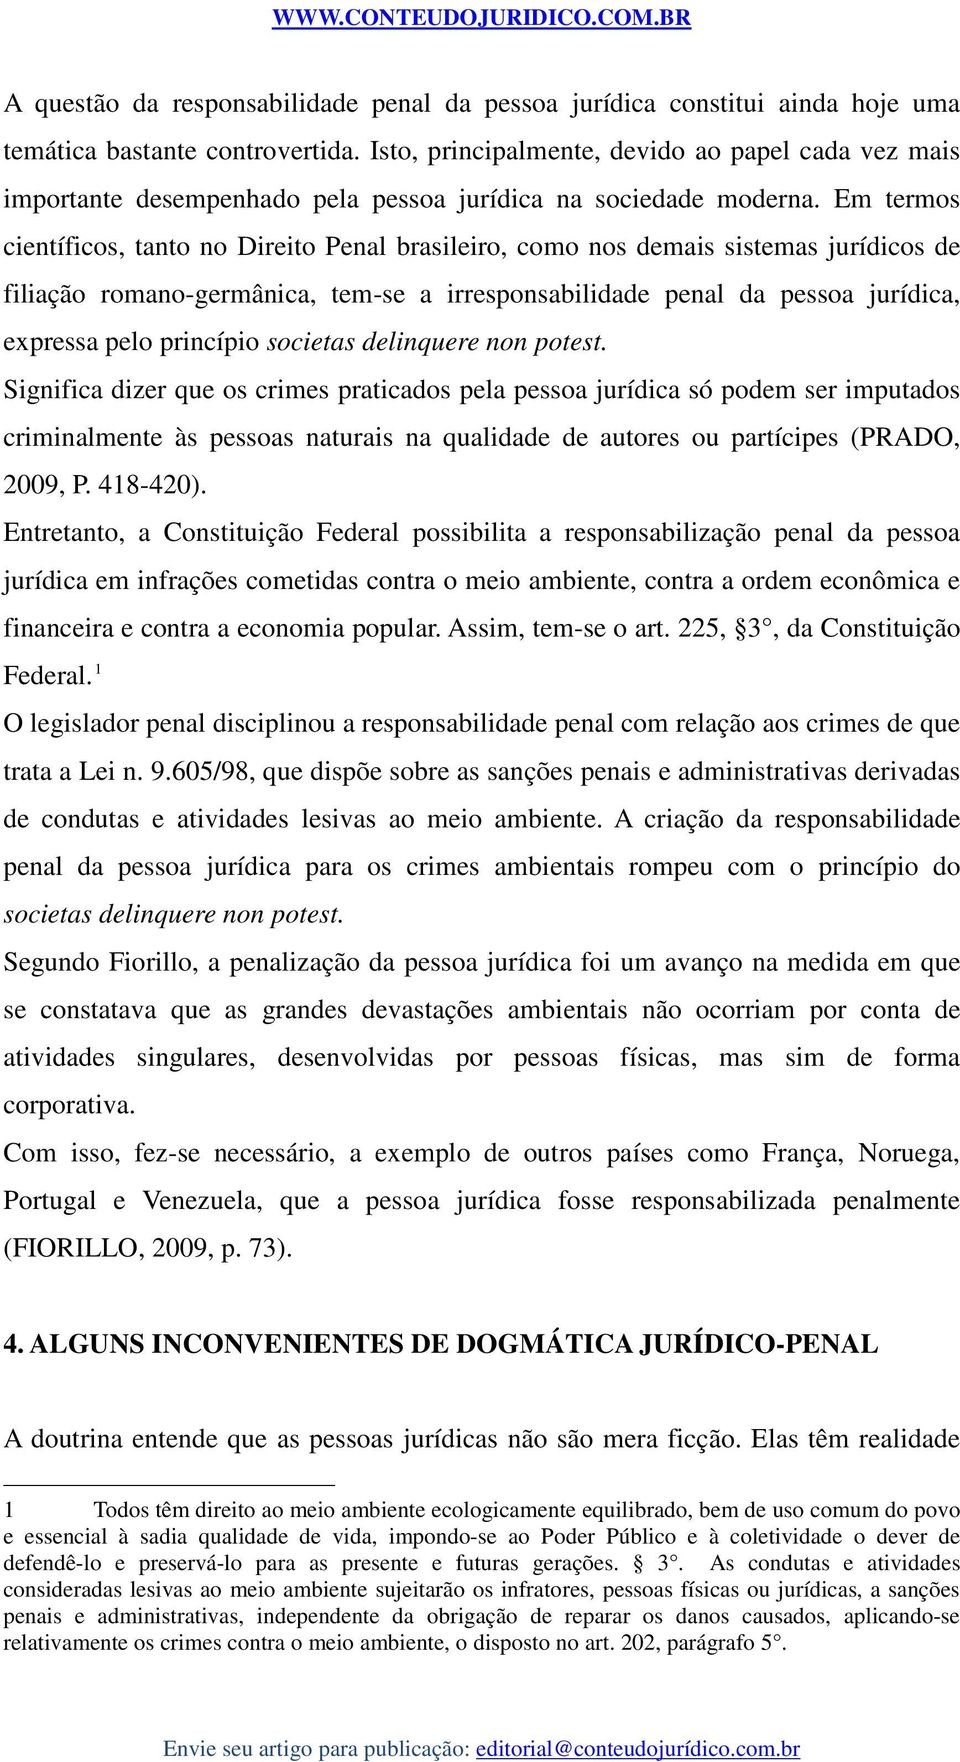 Em termos científicos, tanto no Direito Penal brasileiro, como nos demais sistemas jurídicos de filiação romano-germânica, tem-se a irresponsabilidade penal da pessoa jurídica, expressa pelo